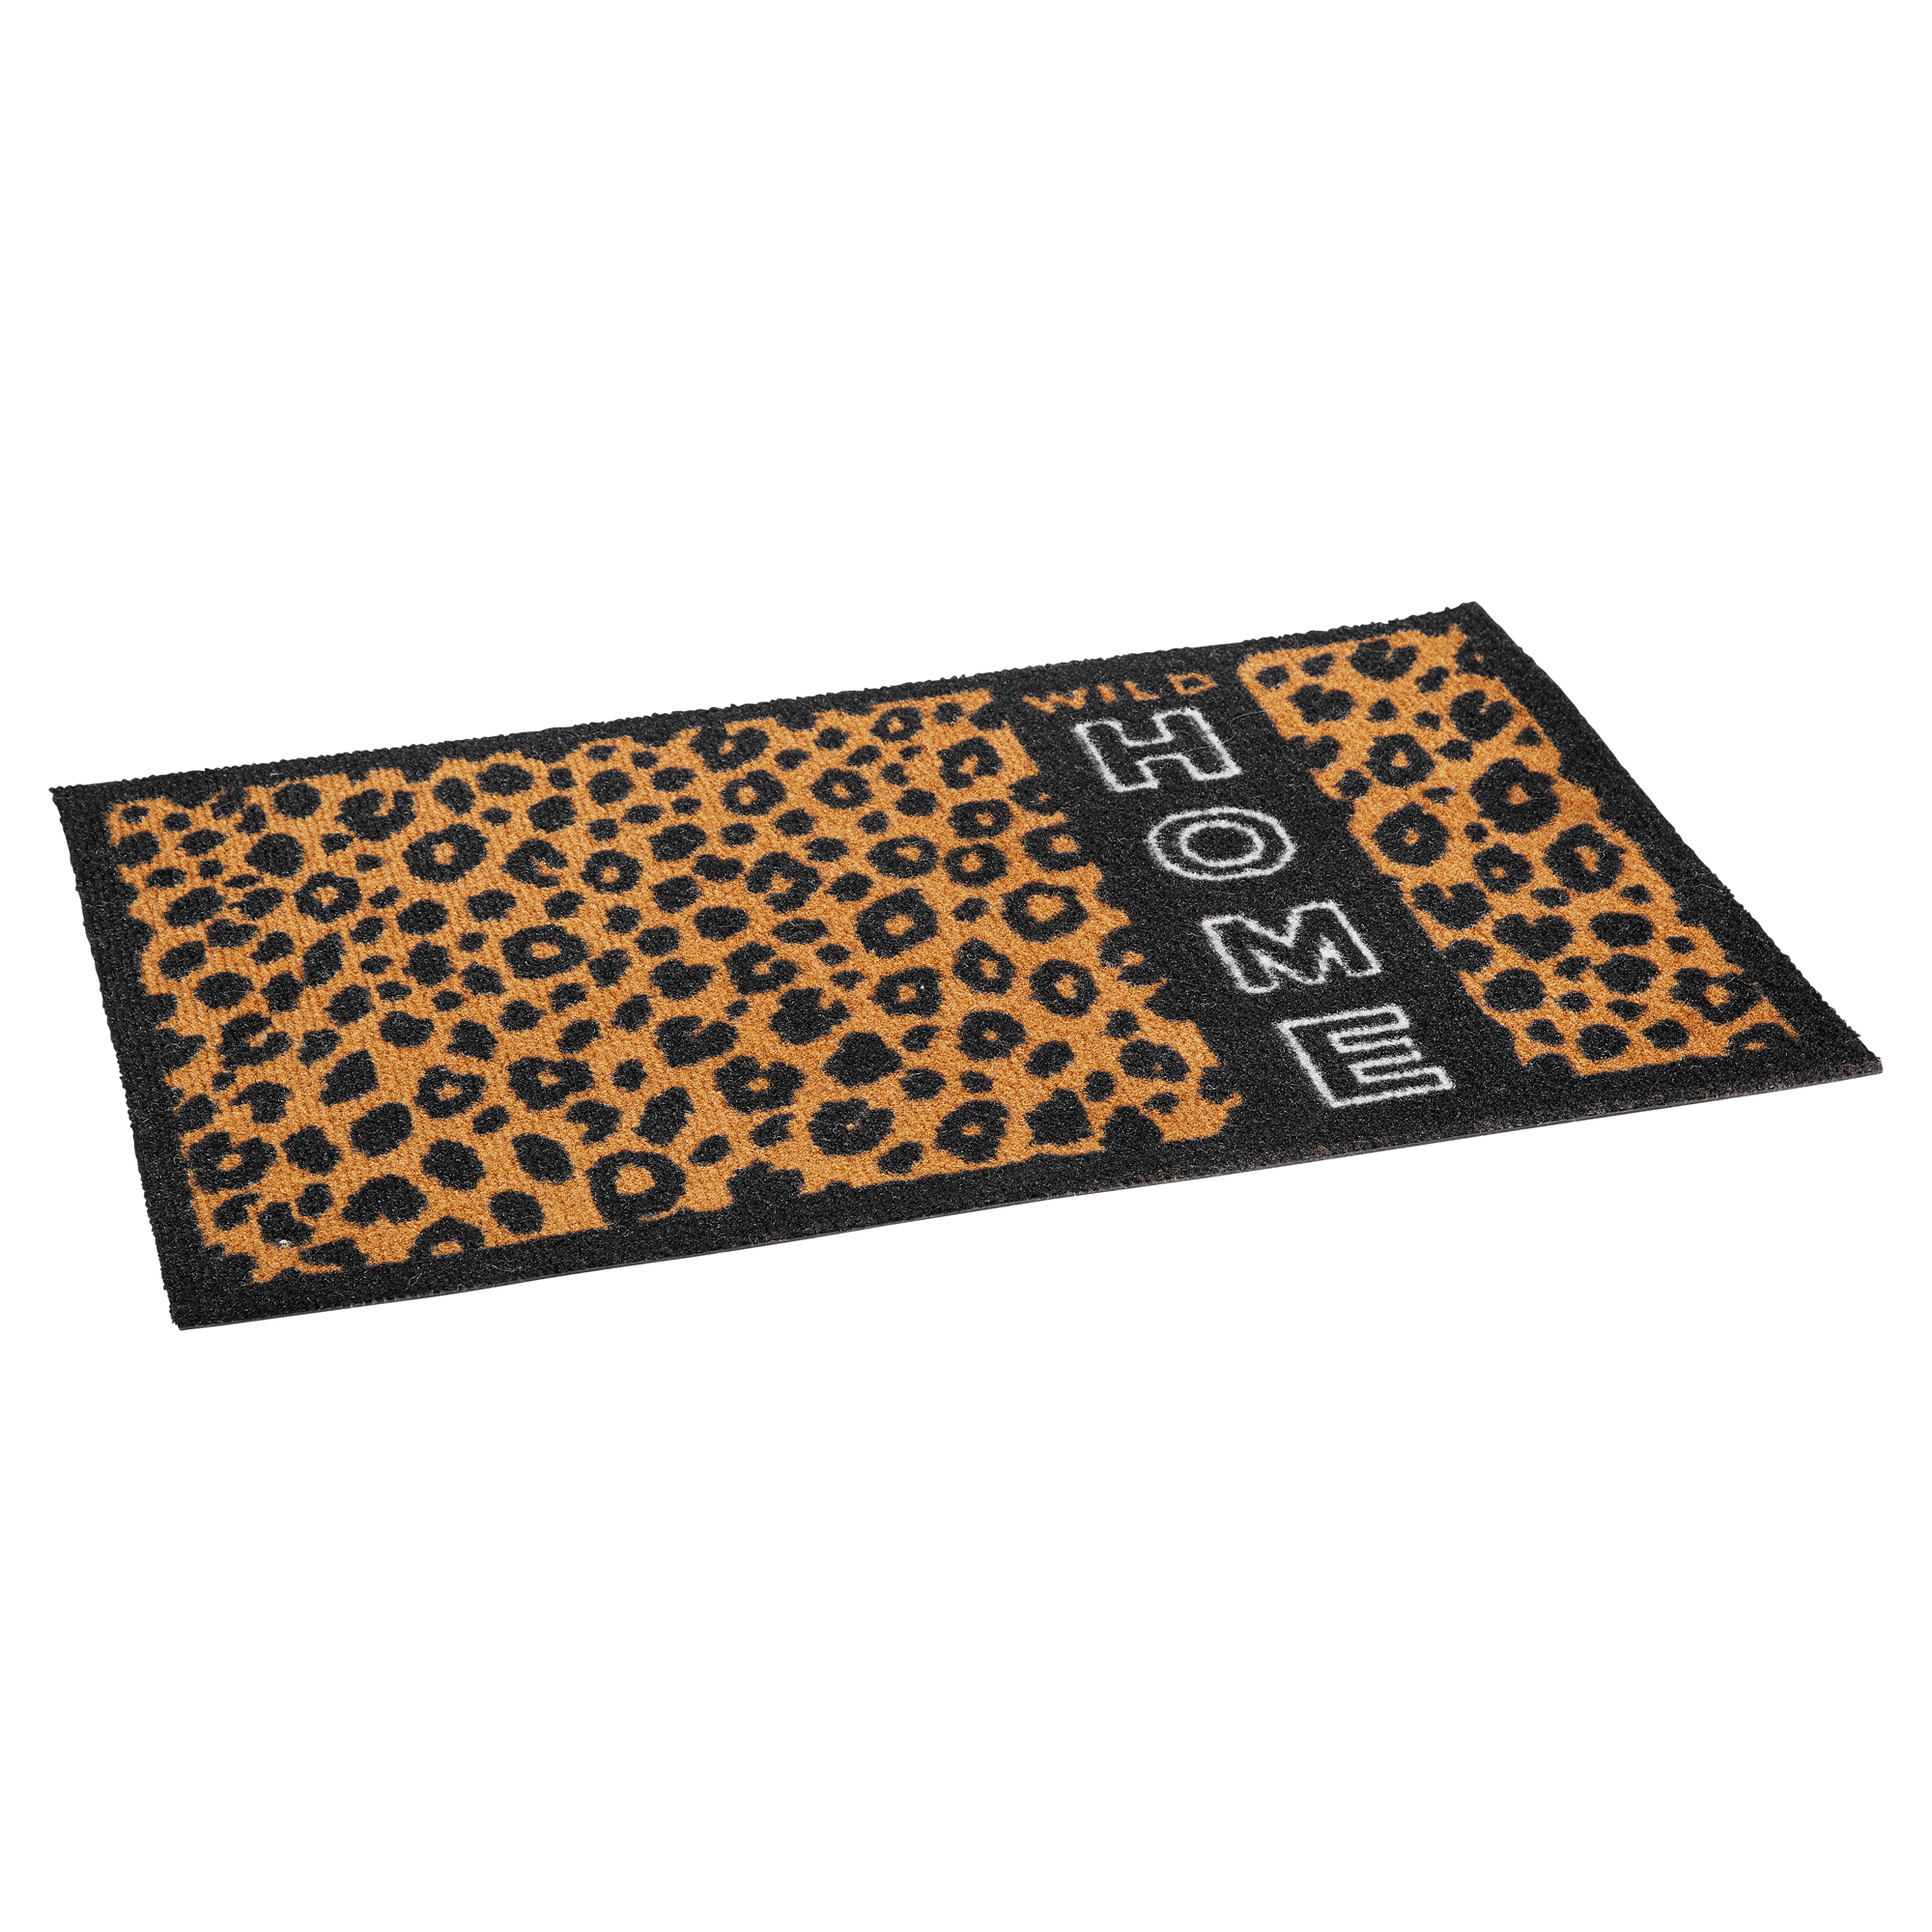 Fußmatte "Gepard" Home Polyamid braun 58 x 39 cm + product picture